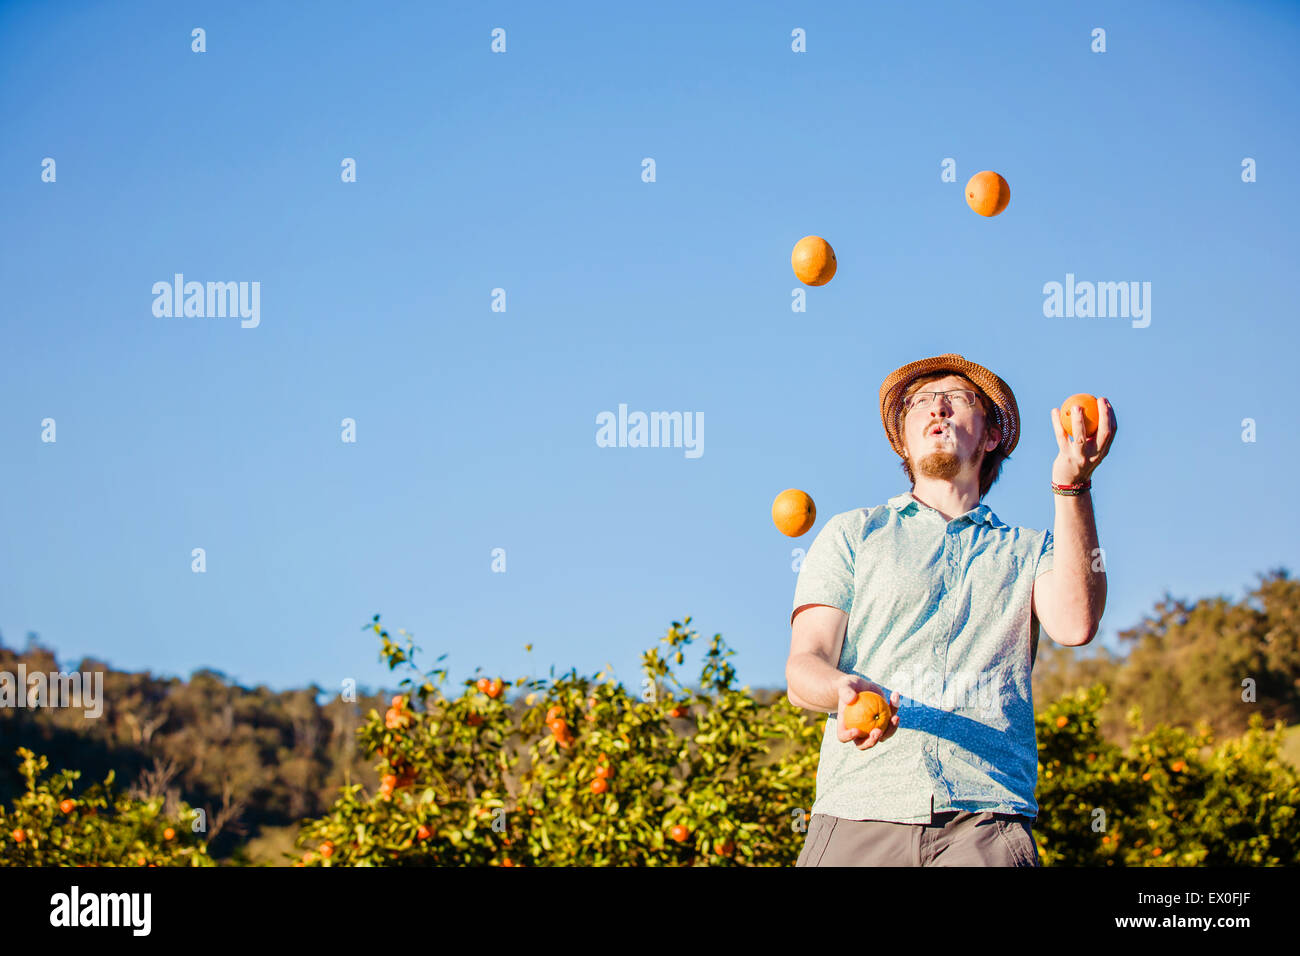 Allegro giovane juggling arance sulla fattoria di agrumi Foto Stock